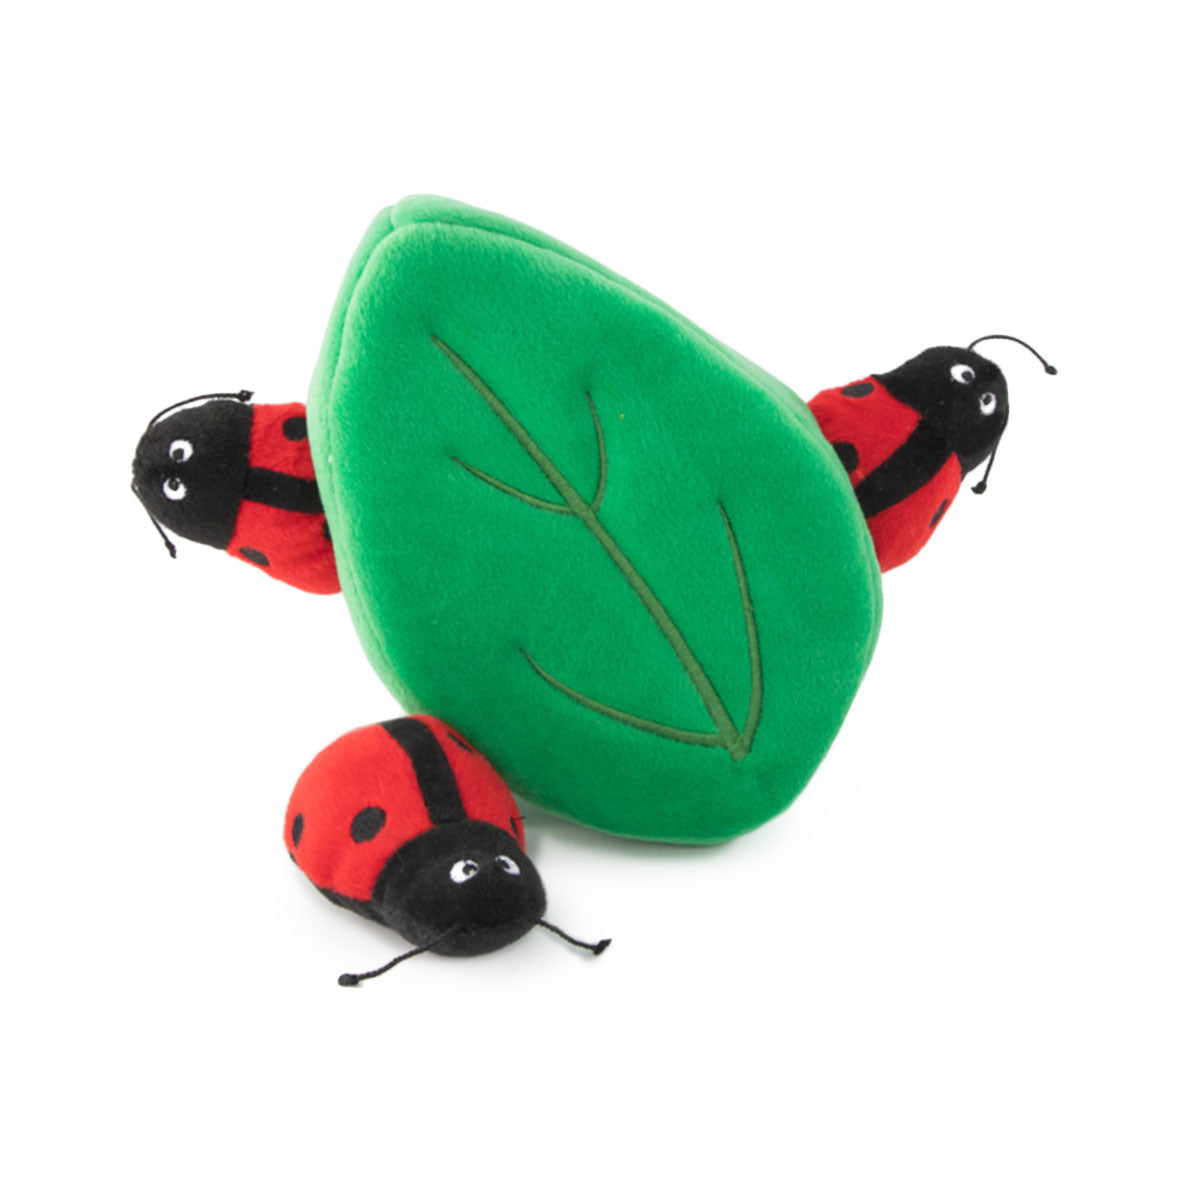 ZIPPY PAWS - Zippy Burrows Ladybugs in a Leaf